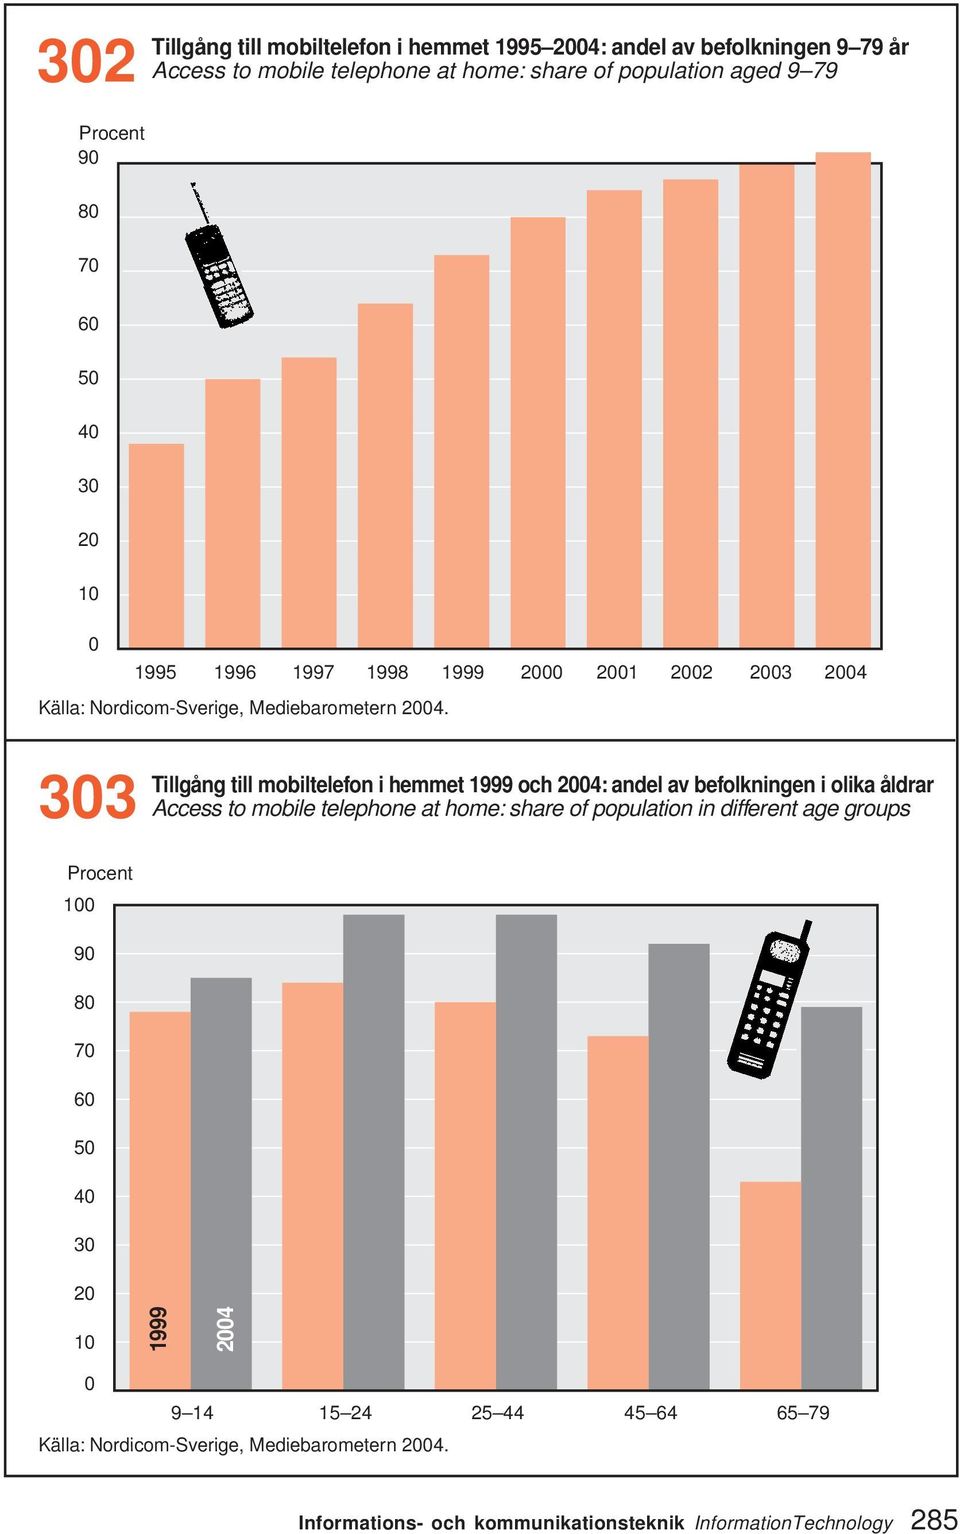 Tillgång till mobiltelefon i hemmet 1999 och 24: andel av befolkningen i olika åldrar 33 Access to mobile telephone at home: share of population in